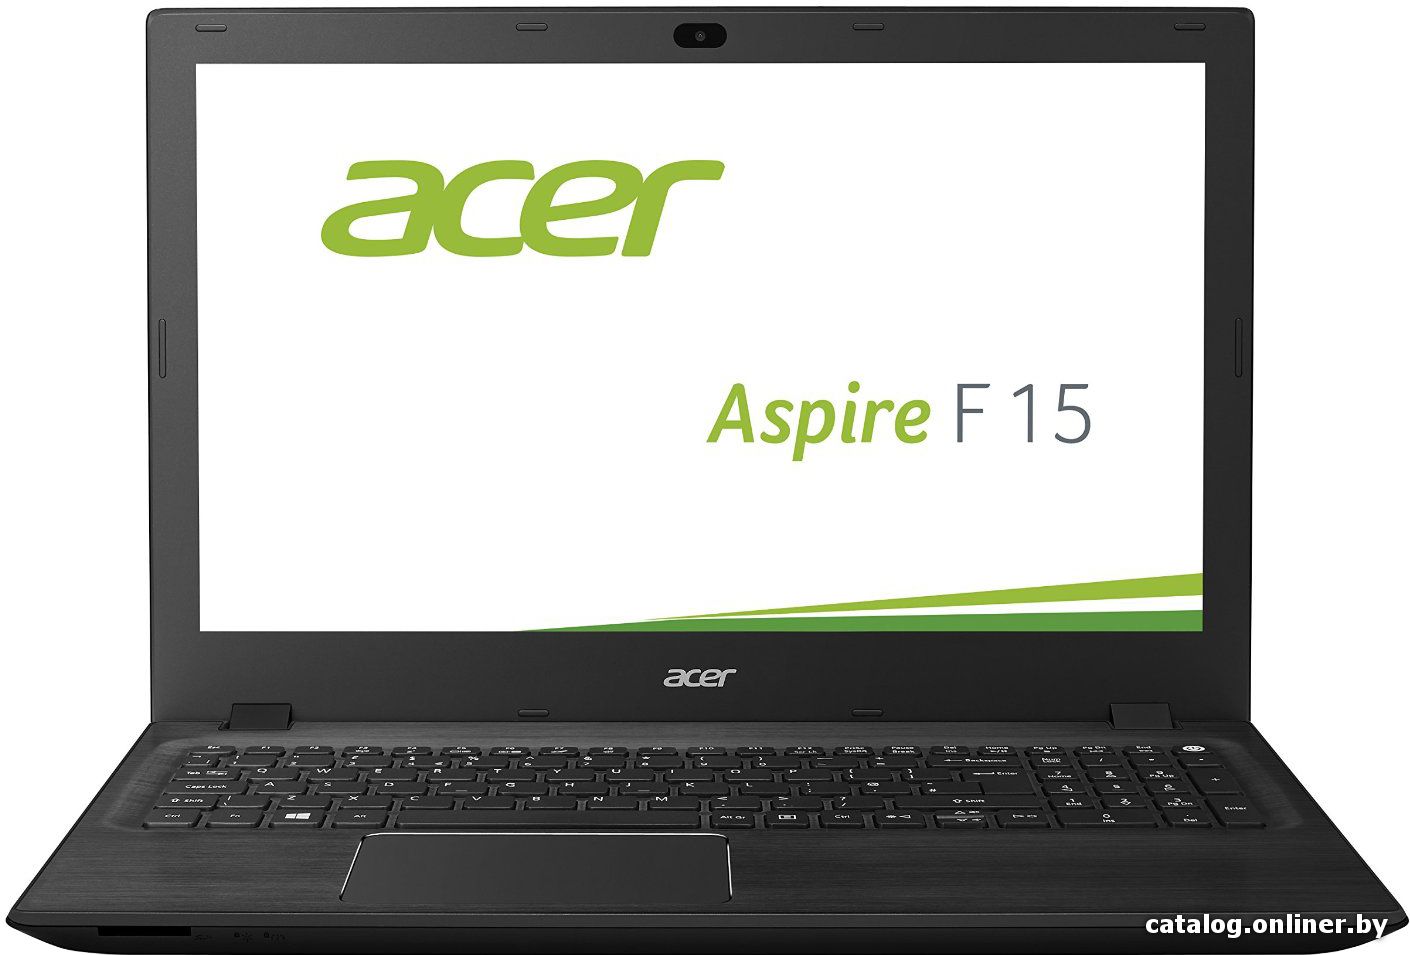 Замена видеокарты Acer Aspire F15 F5-571G-587M